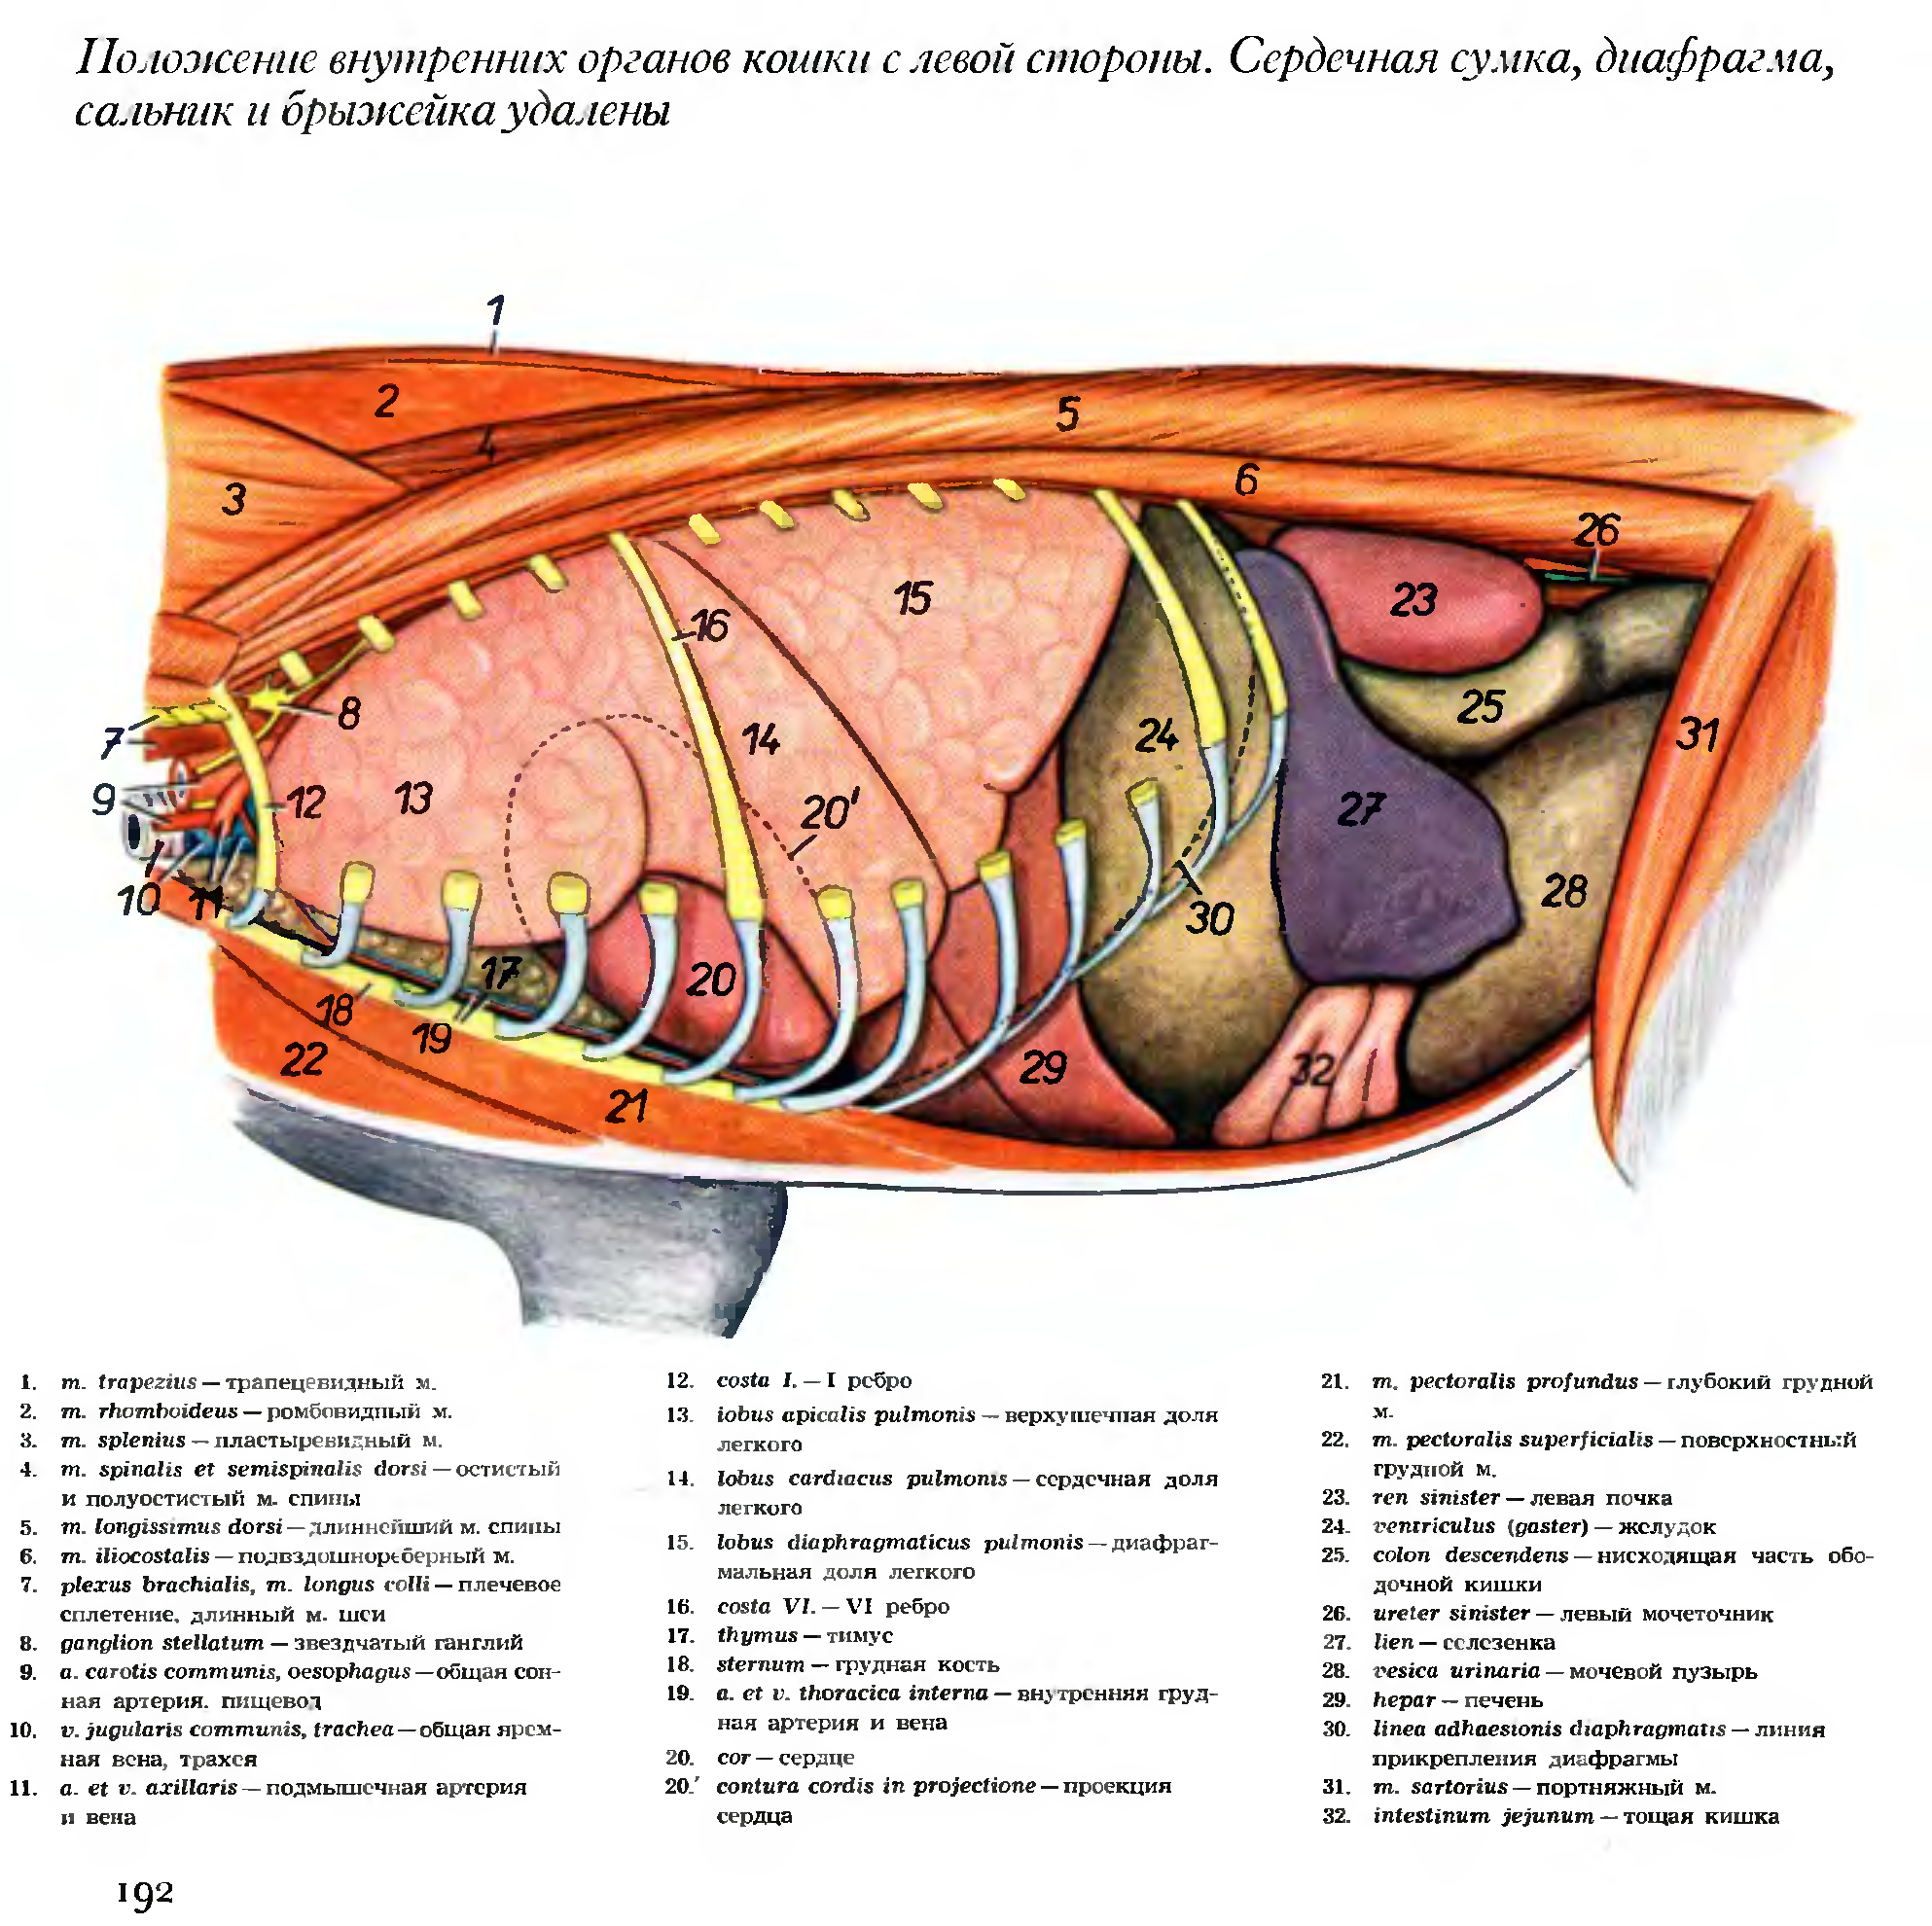 Топографическая анатомия органов брюшной полости кошки